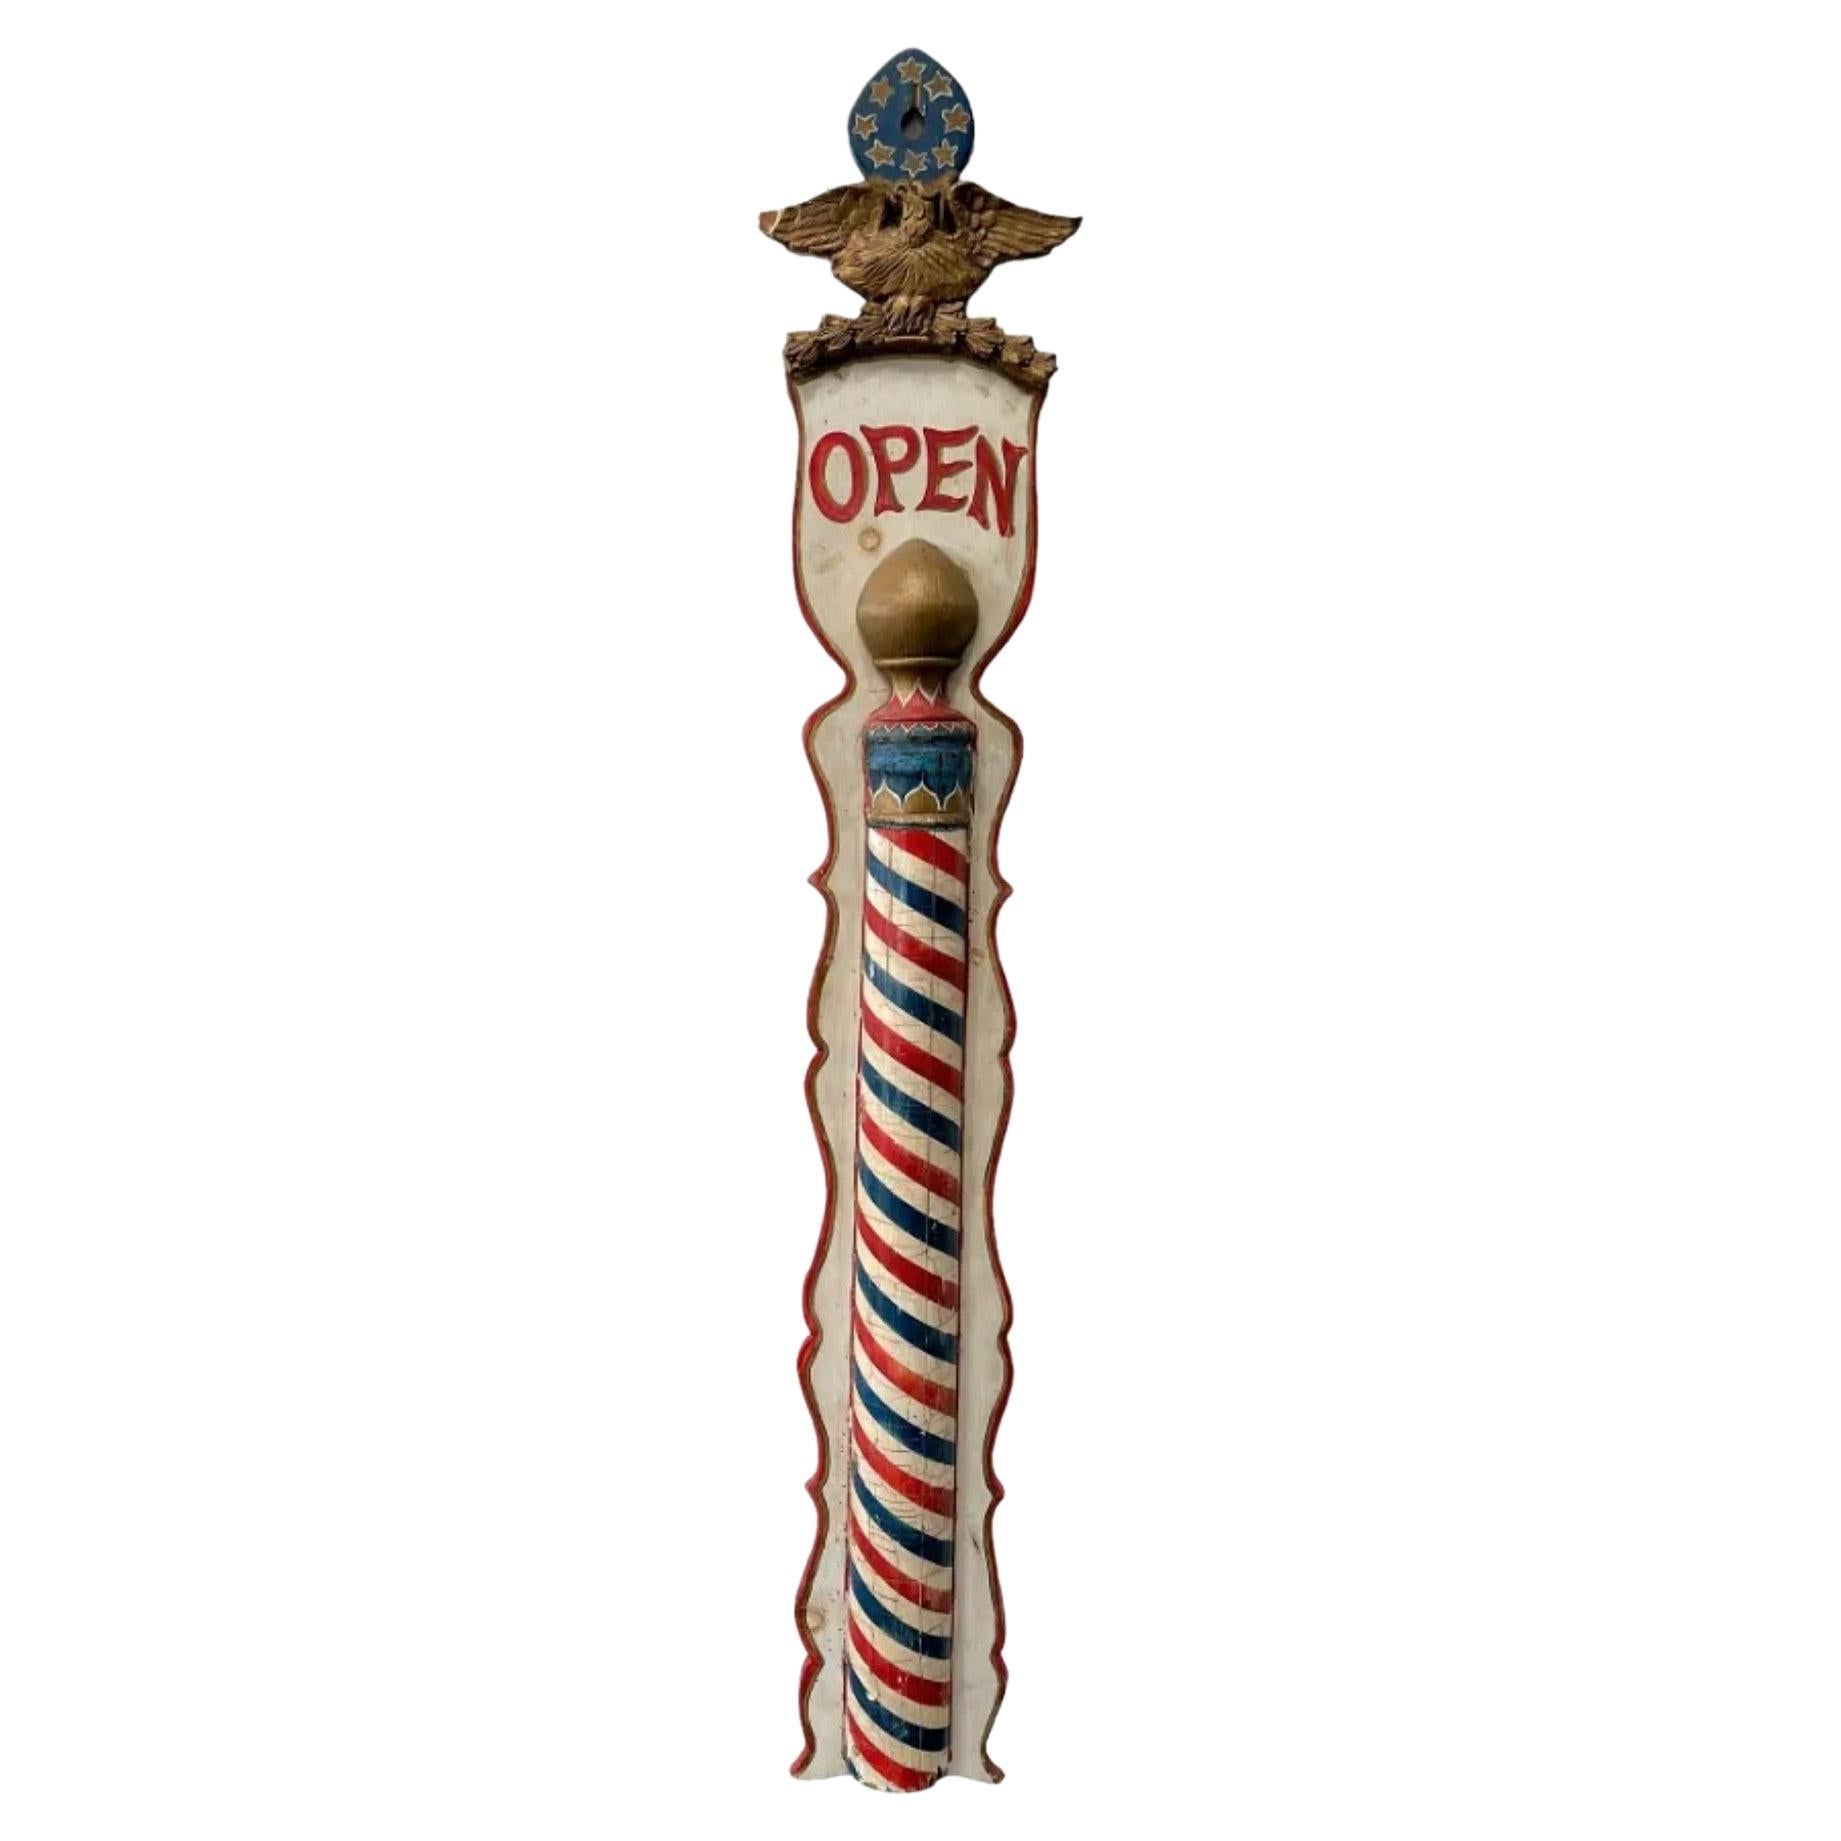 Amerikanische patriotische Barber Pole, offenes Schild, Volkskunst des 19. Jahrhunderts